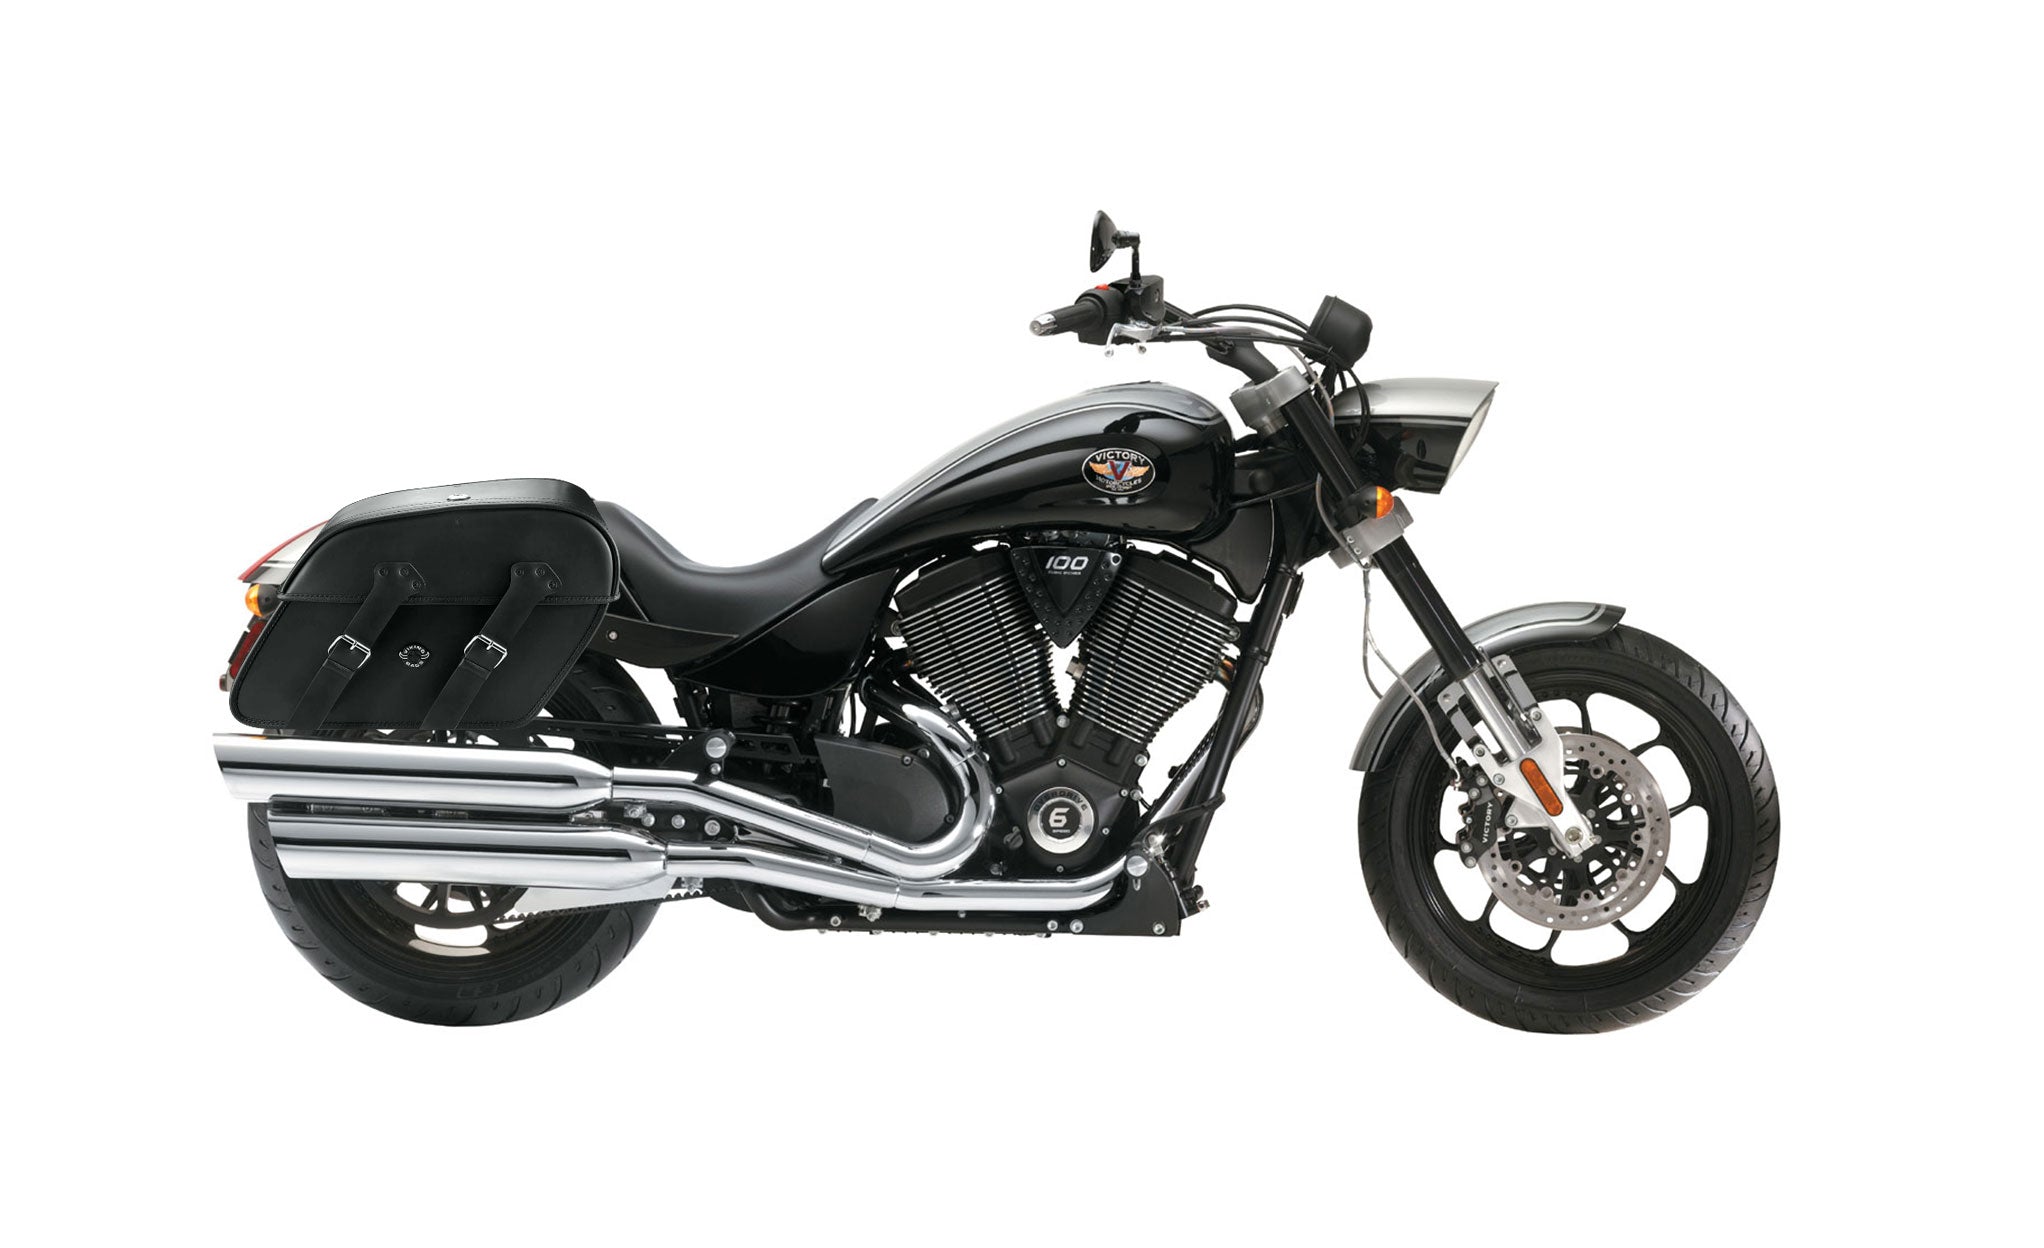 Viking Raven Extra Large Victory Hammer Leather Motorcycle Saddlebags on Bike Photo @expand